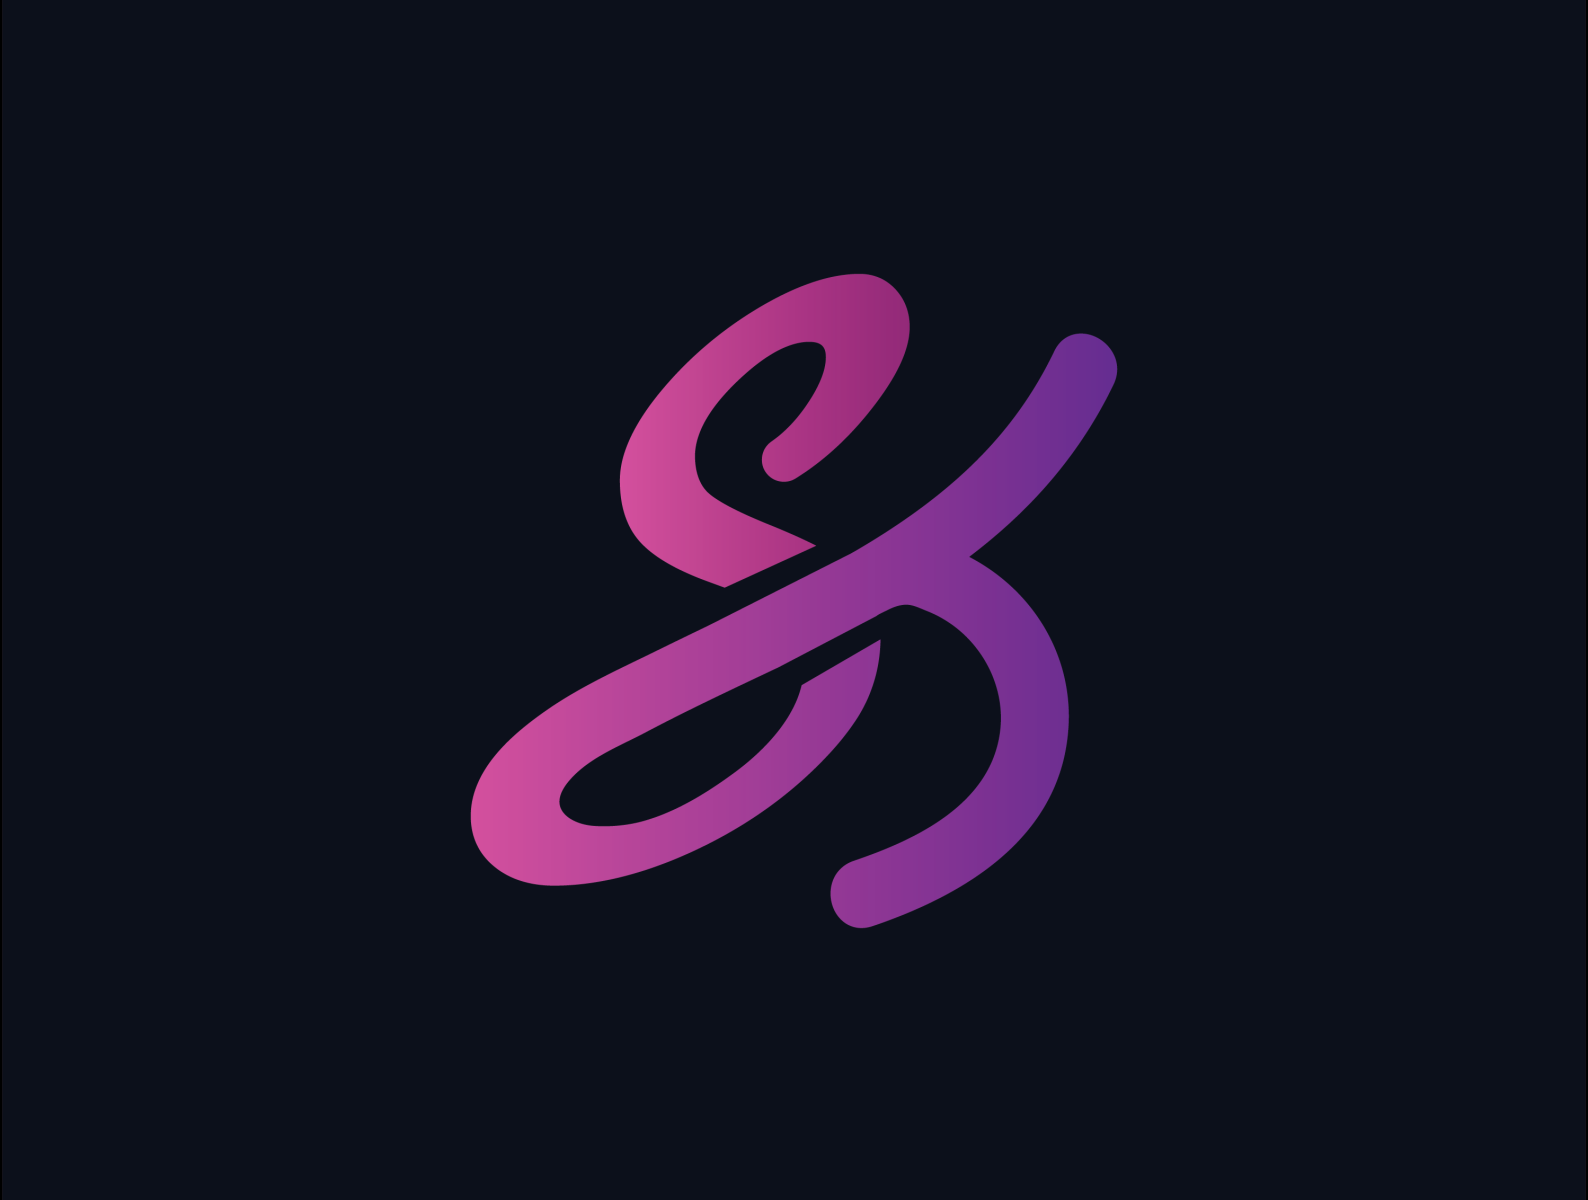 SK logo by Mizan on Dribbble